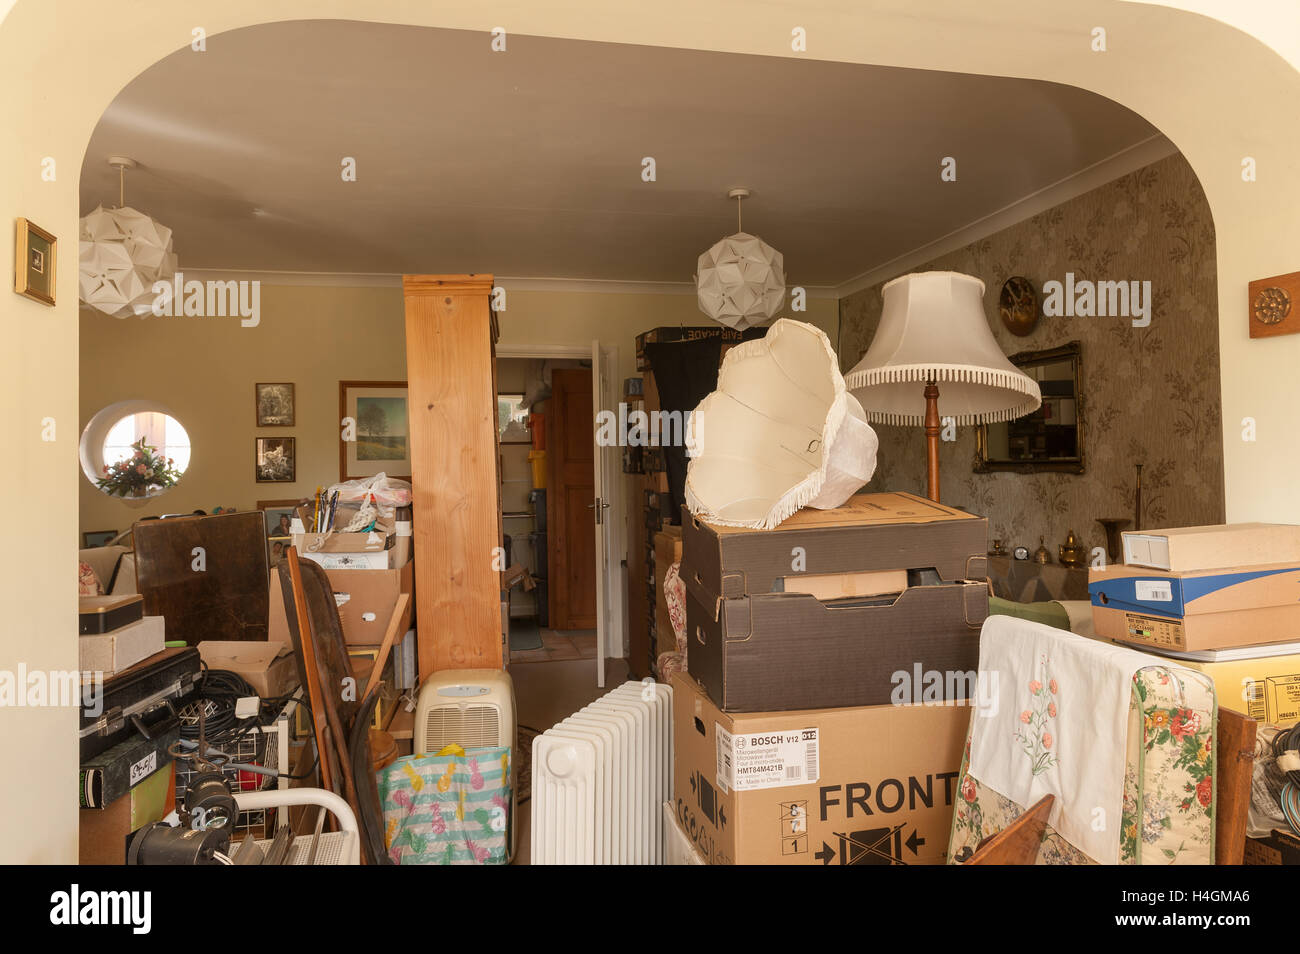 Un déménagement et le chaos qu'elle crée à l'intérieur de boîtes avec paniers un peu partout et pas de place pour déplacer in livingroom Banque D'Images